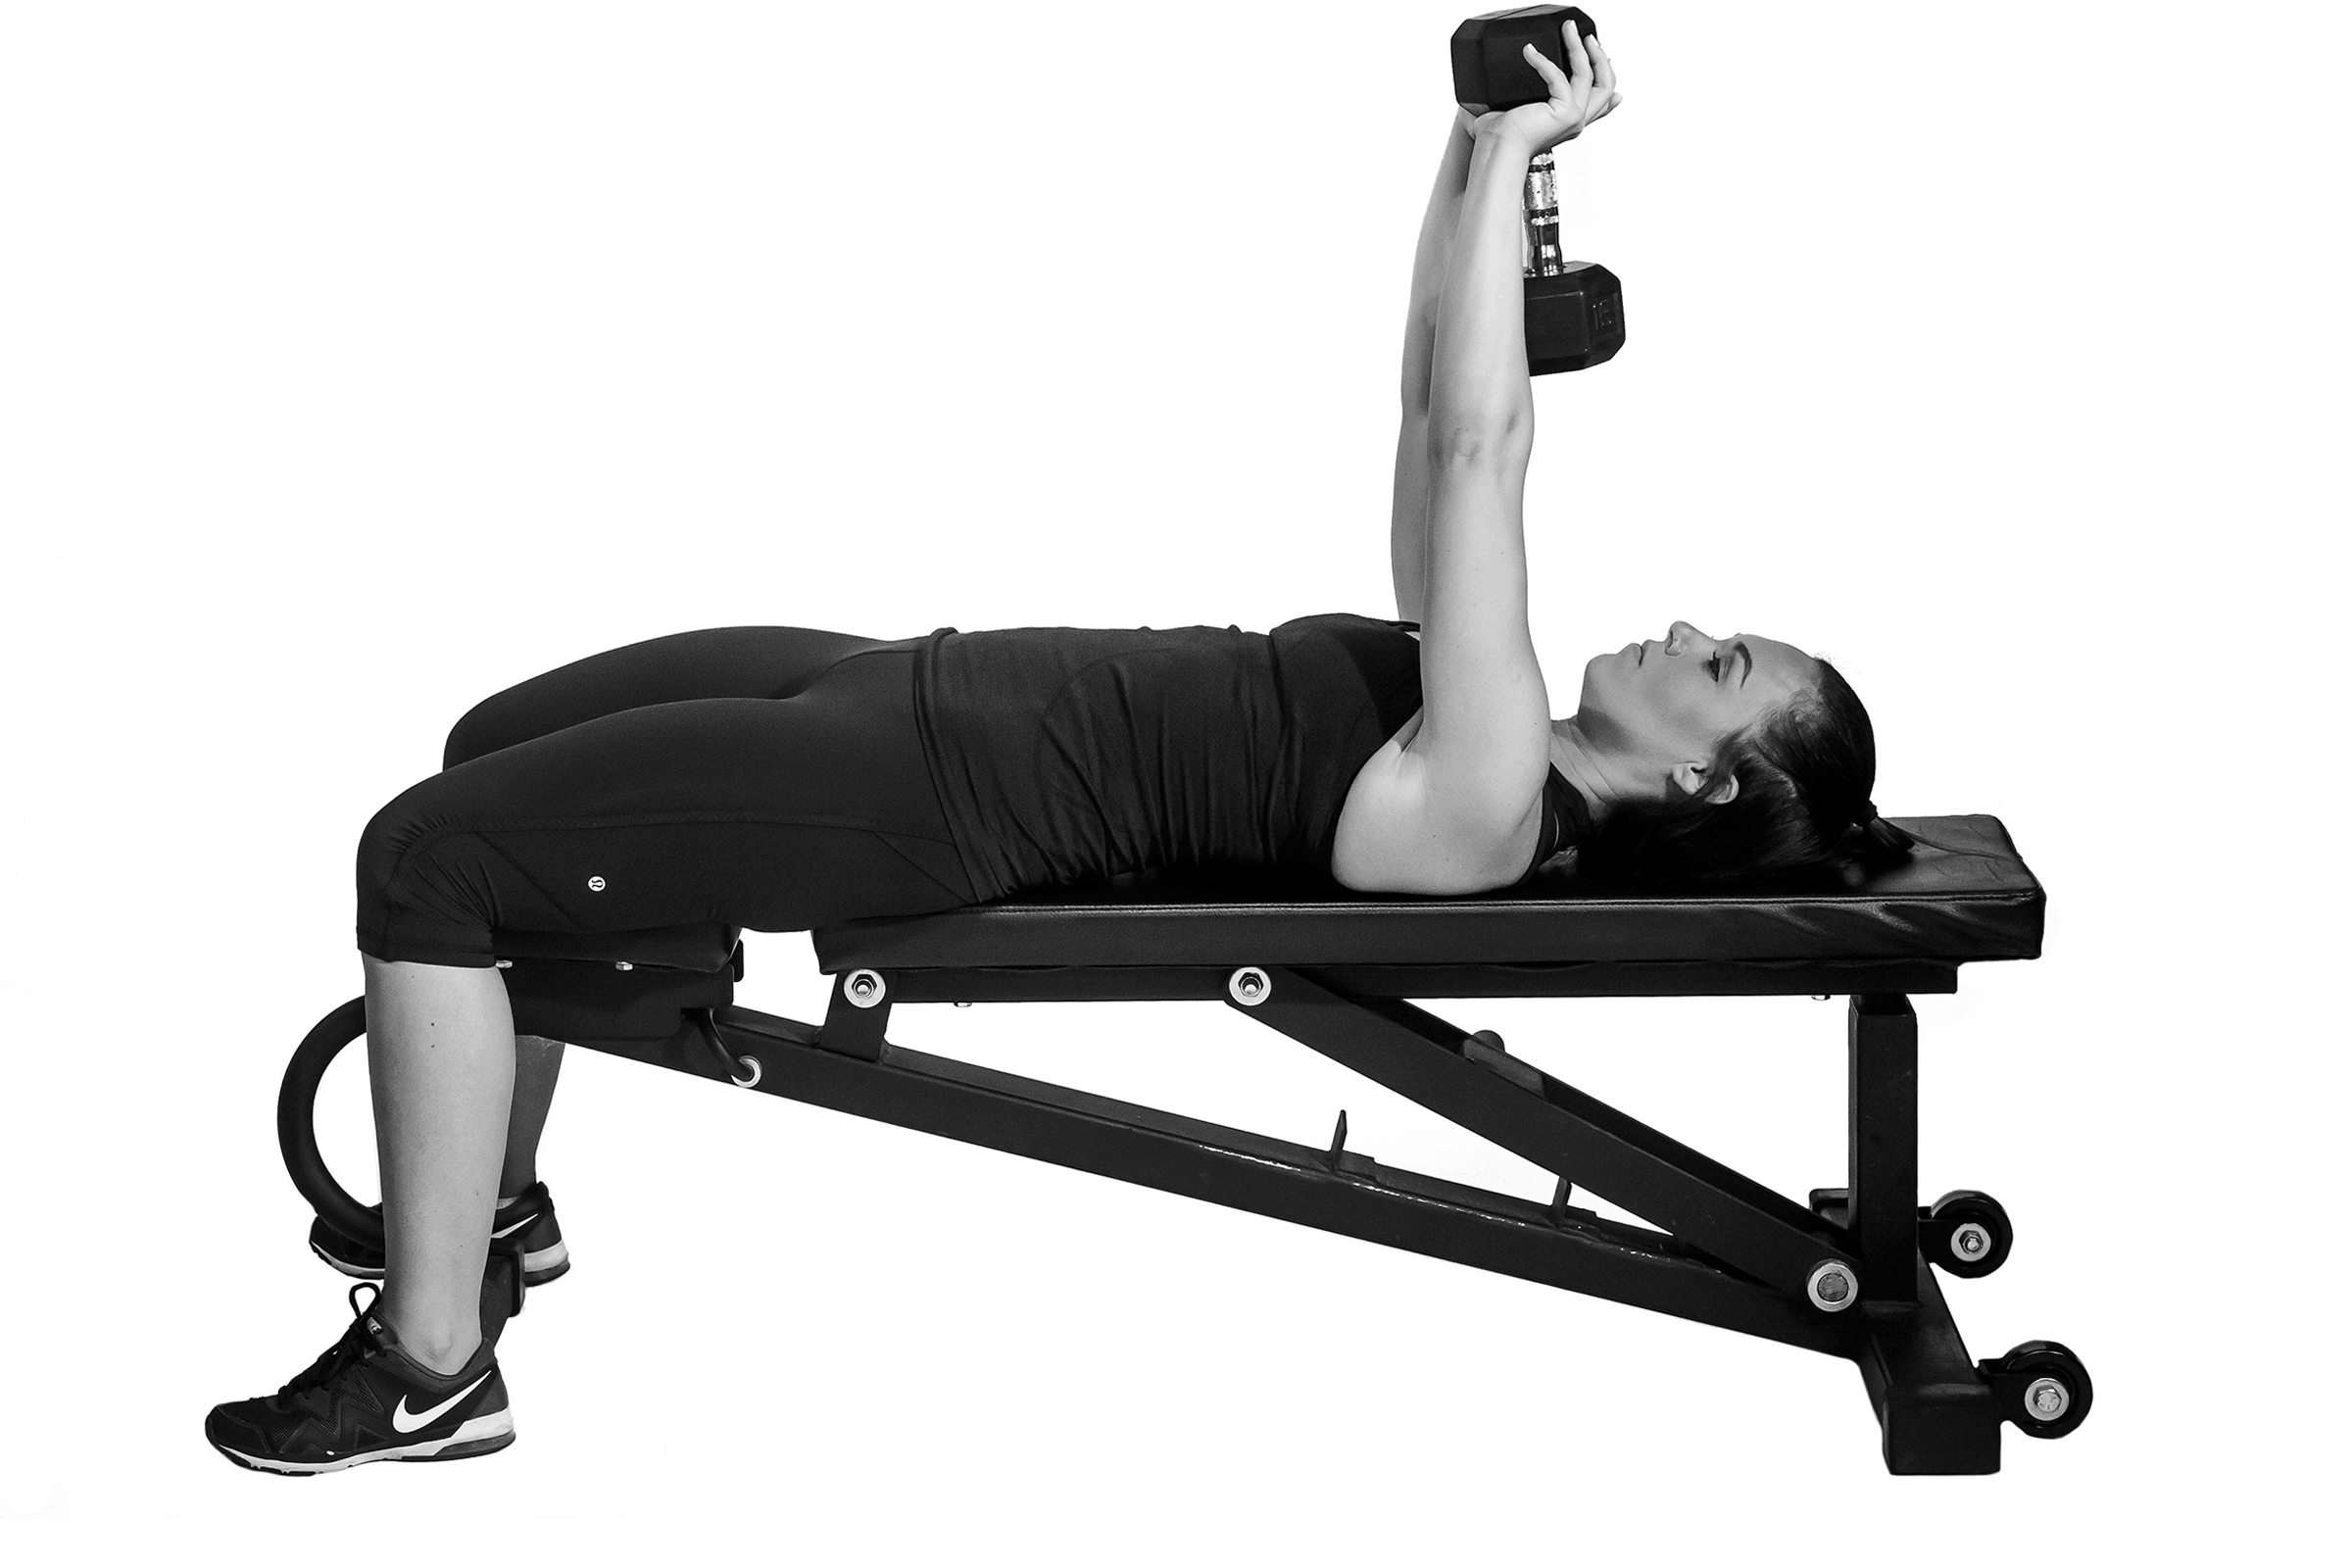 Le pull over (extension par-dessus la tte) fait partie des exercices recommands pour muscler le haut du corps.